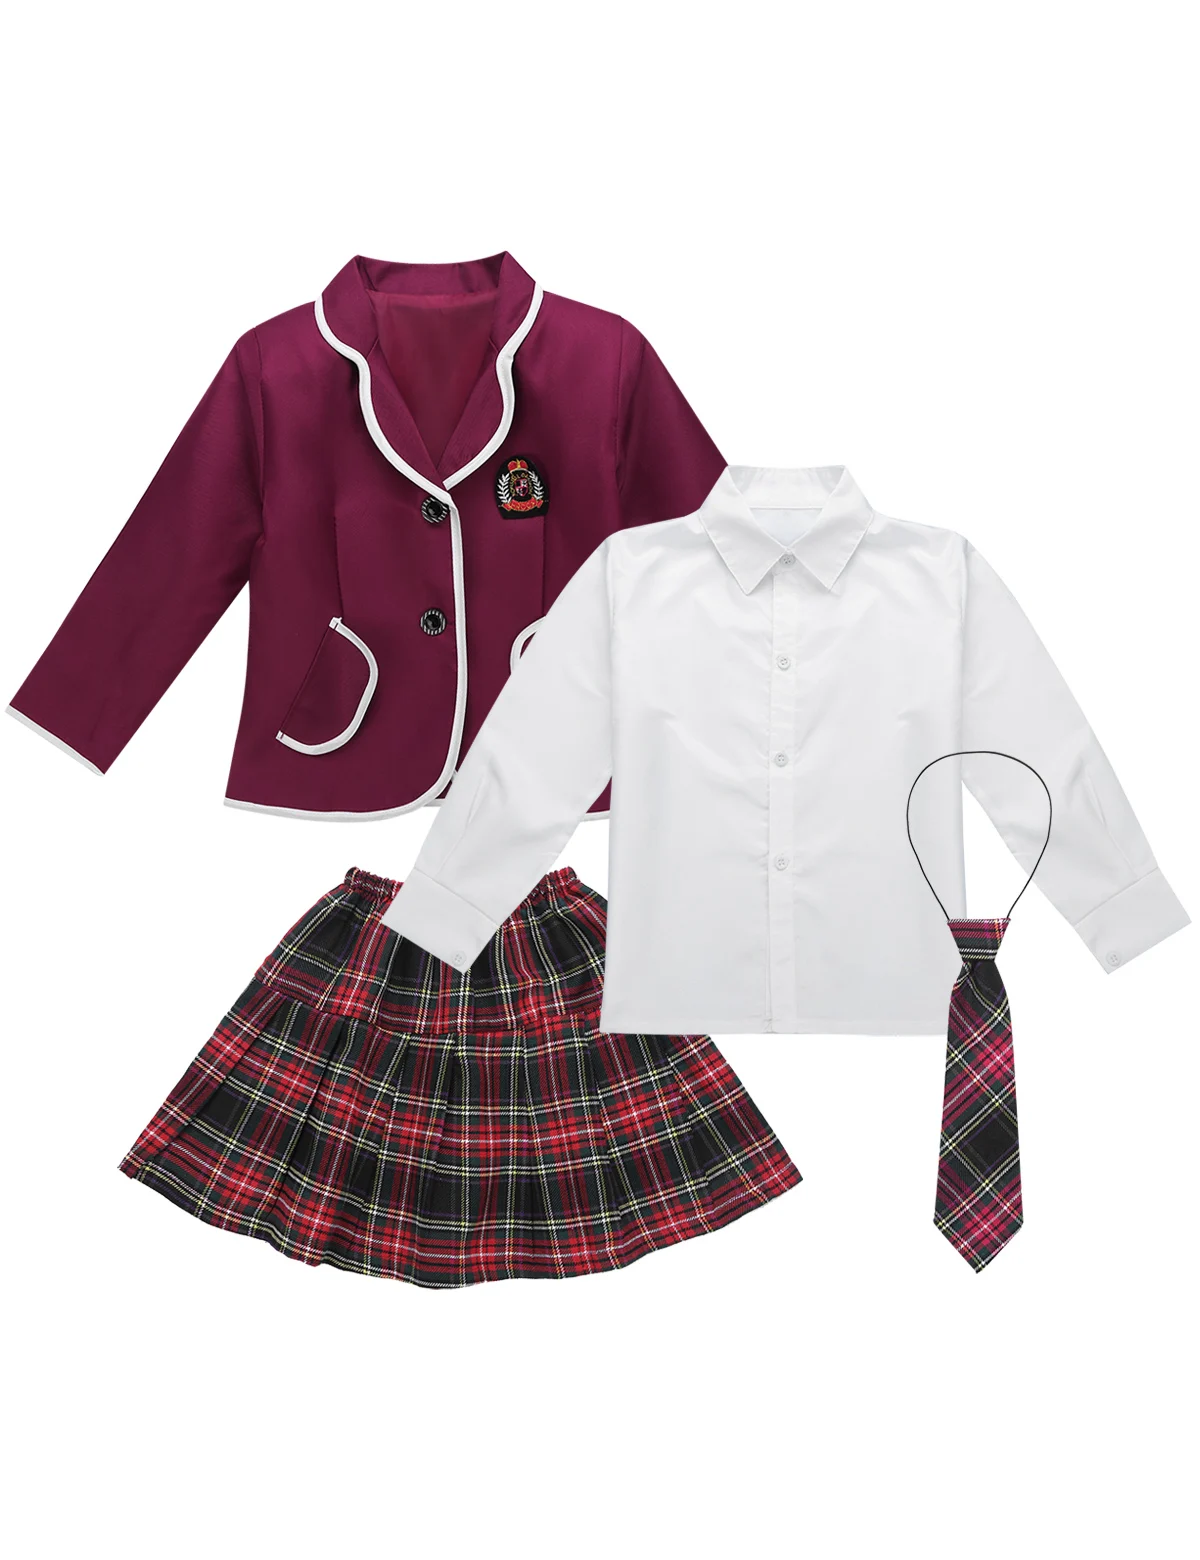 Костюм школьницы на Хэллоуин для девочек; Праздничная форма; костюм для костюмированной вечеринки в стиле аниме; пальто с длинными рукавами и рубашка; мини-юбка с галстуком